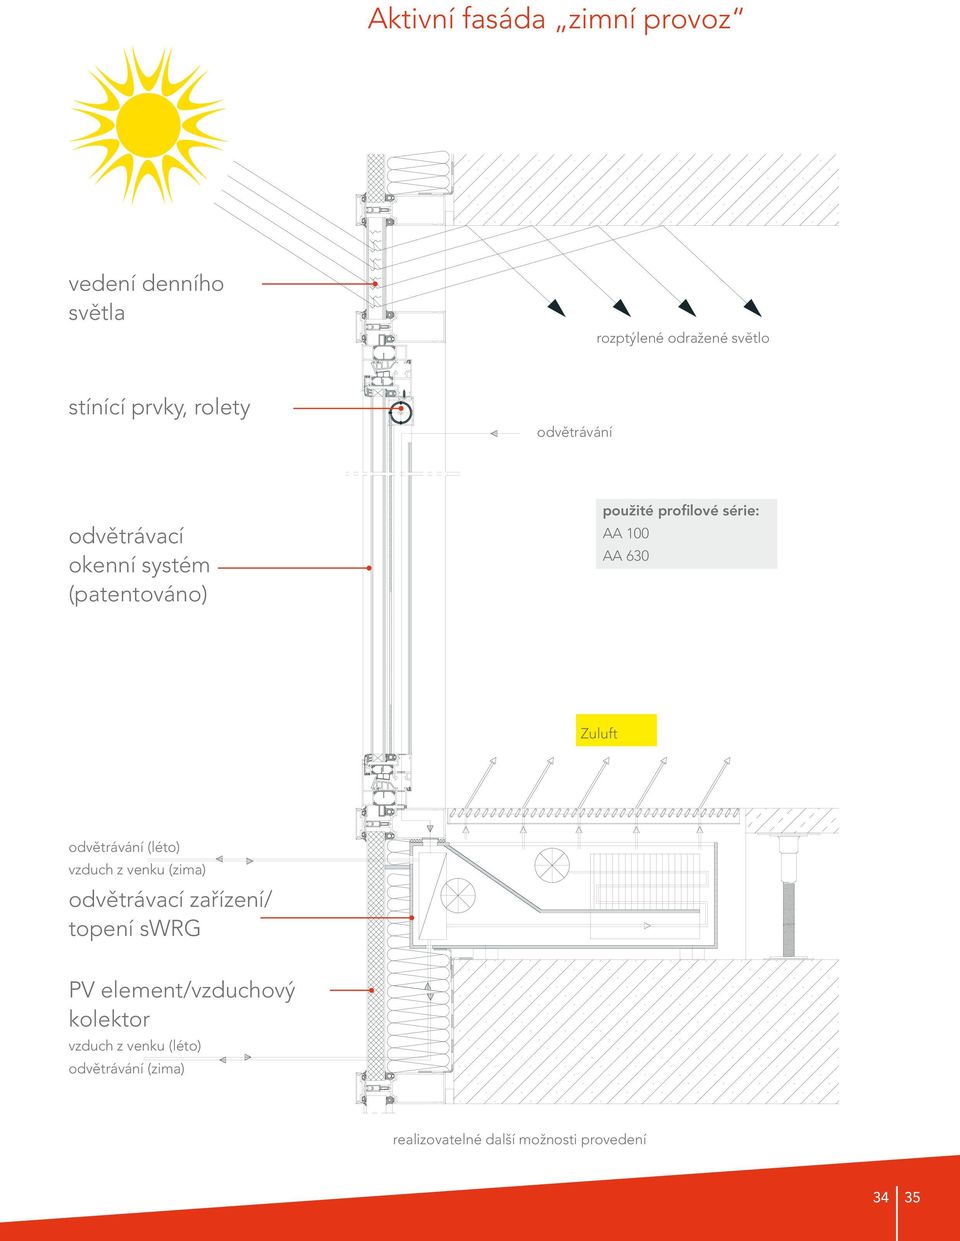 630 Zuluft odvětrávání (léto) vzduch z venku (zima) odvětrávací zařízení/ topení swrg PV